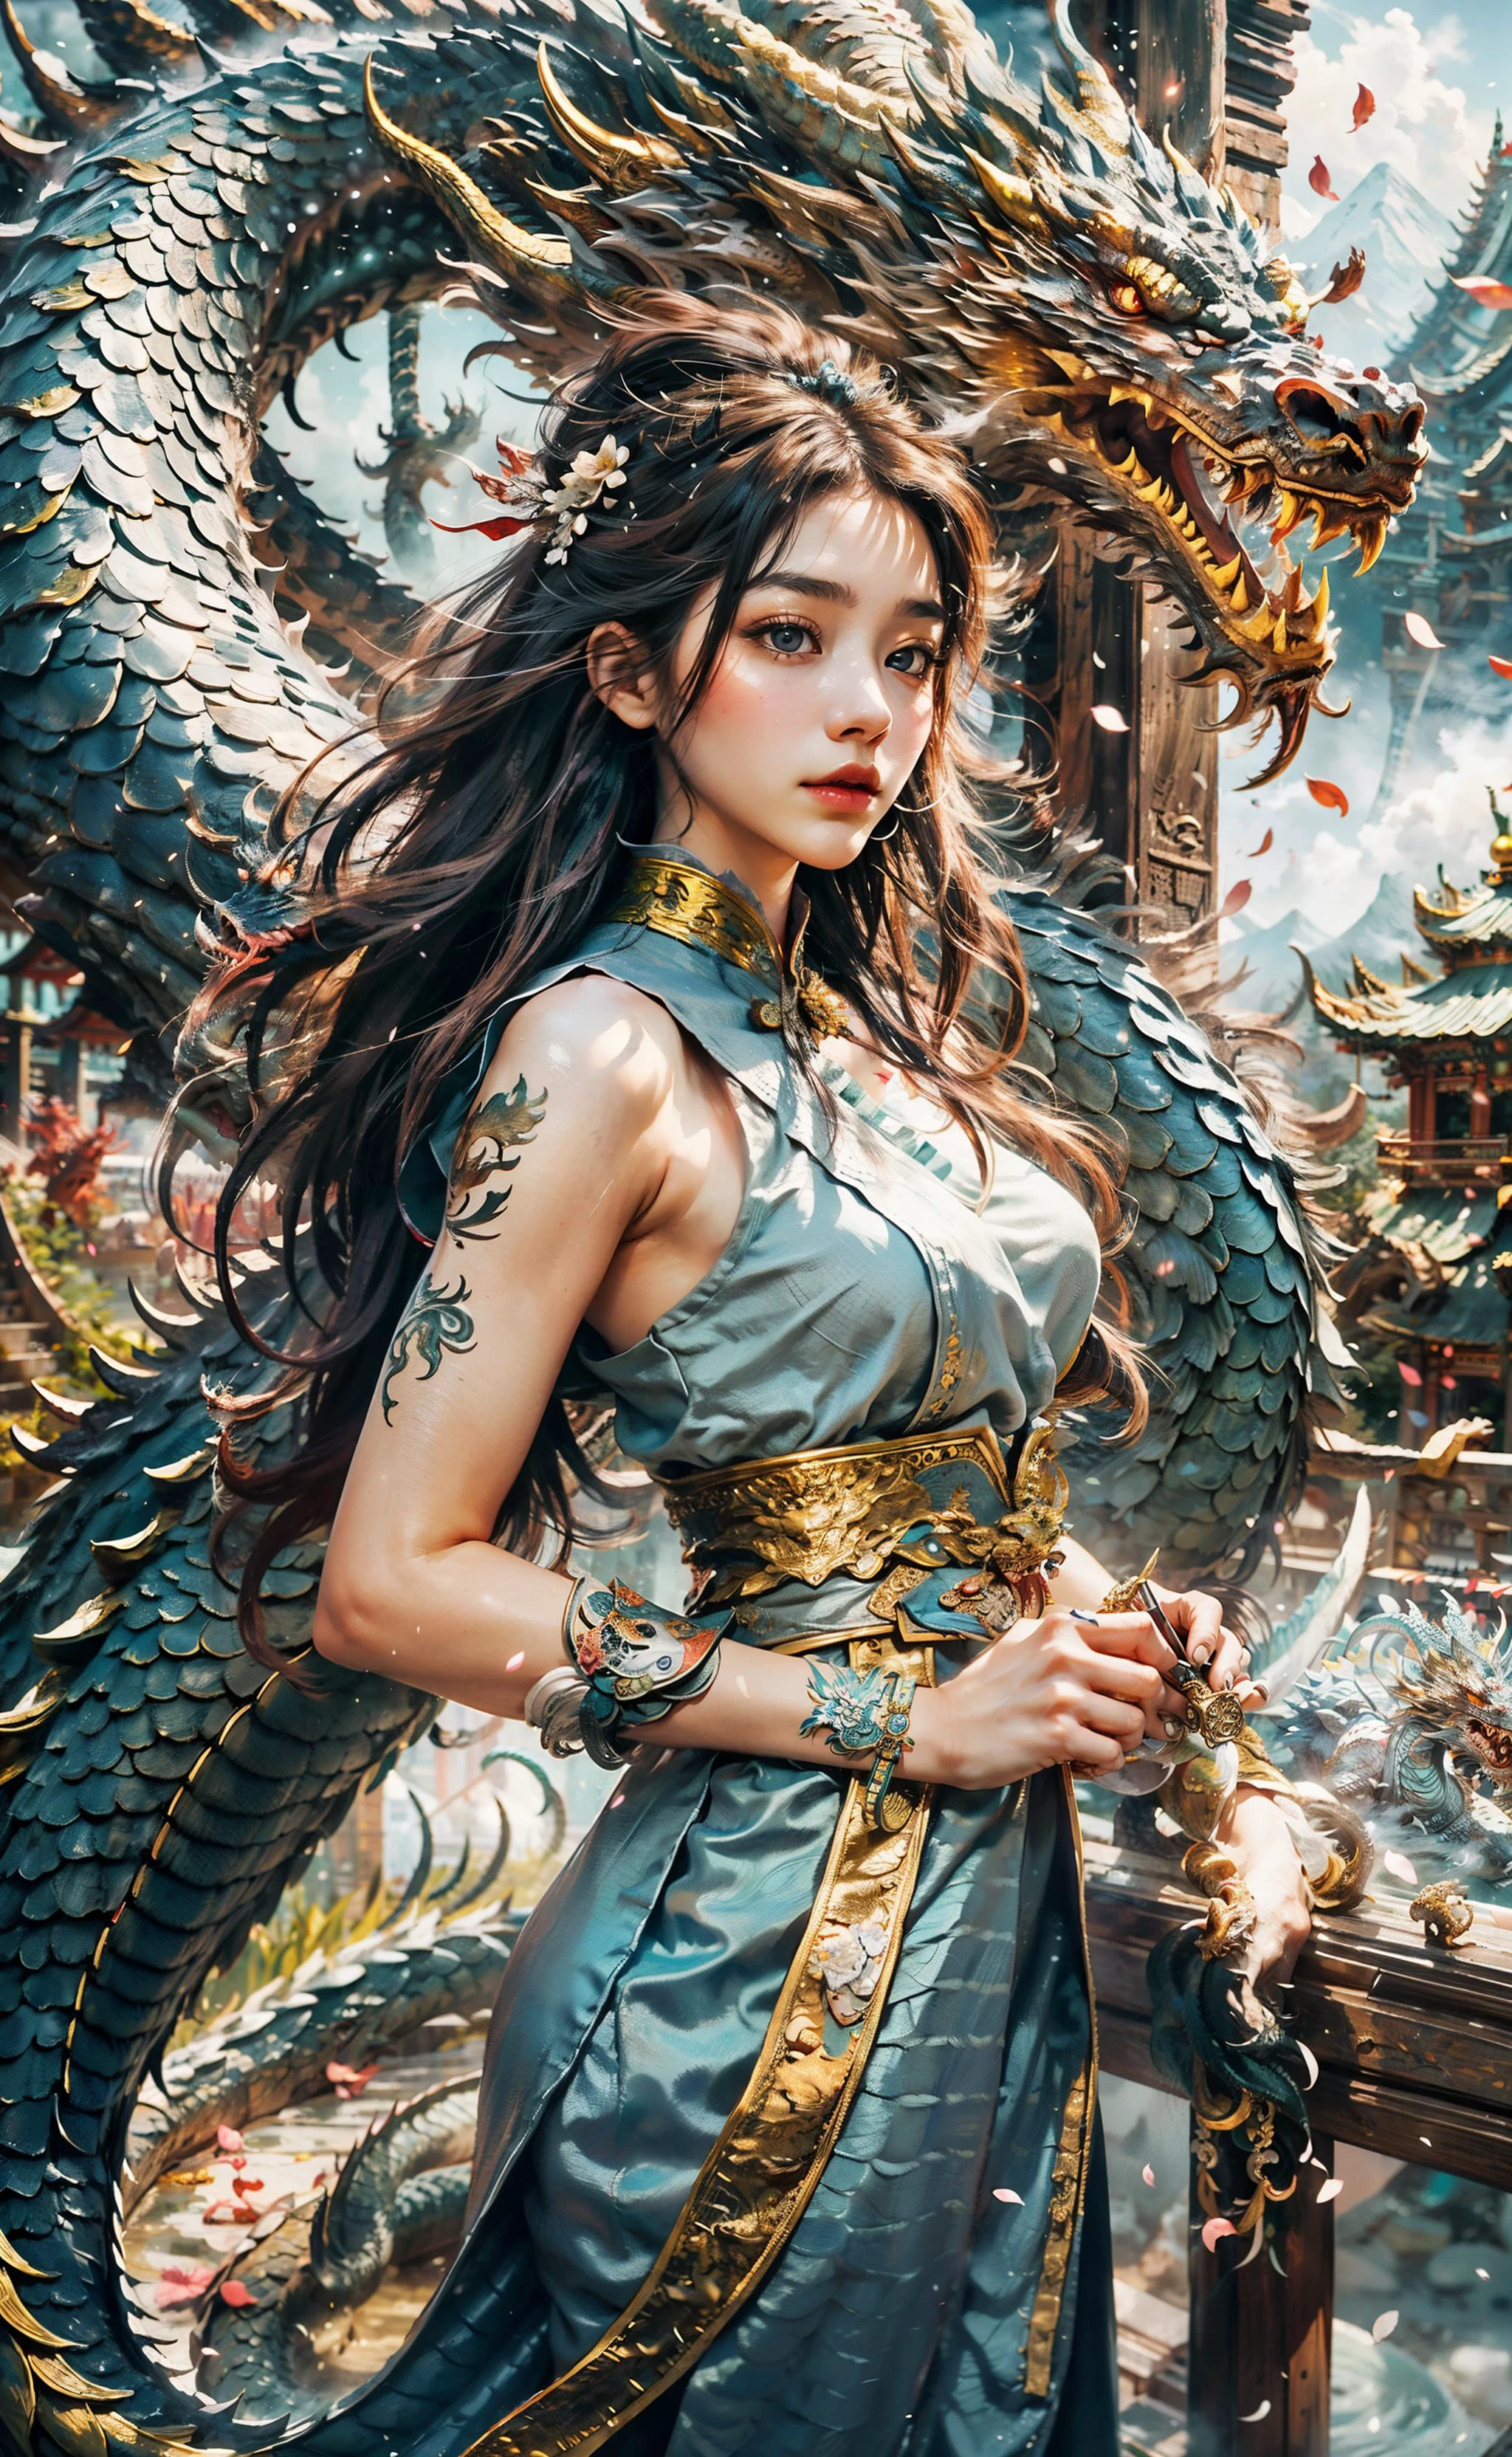 Дракон_настоящий, Пламенный длинный дракон, Китайский дракон, лапы, змеевидное тело, зоркие глаза, ((Лучшее качество)), ((шедевр)), ((реалистичный)), ((18-летняя девушка в китайской одежде., распущенные волосы украшены красивым украшением для волос, стоит среди летающих лепестков цветов, а вокруг нее обвивается величественный дракон)), Модель стрижки от Choppy Layers, Стоит в позе дверного проема, острый серо-синий,  Ракурс съемки с высоты птичьего полета,
Будьте загипнотизированы очаровательным видом 18-летней девушки, одетой в элегантный китайский наряд., ее струящиеся волосы изящно украшены очаровательным украшением для волос.. Когда лепестки цветов колышутся на ветру вокруг нее, a majestic dragon wraps its змеевидное тело around her, создание сцены мифического очарования. Погружен в самую глубокую реку джунглей деревни тропического леса., их окружает пышная зелень и яркая флора.. Руны украшают ландшафт, пропитывая атмосферу древнего мистицизма. Дуэт стоит на вершине покрытой туманом горы., где заснеженные вершины достигают неба. Мягкий свет освещает лицо девушки, отбрасывая нежные тени и запечатлевая ее неземную красоту. Боке и далекие неоновые огни добавляют волшебства издалека., создание сказочной атмосферы. Размытый фон еще больше повышает кинематографическое качество., обращая внимание на великолепную и сверхдетализированную композицию. Prepare to be captivated by the seamless blend of natural elements and fantasy in this artistic шедевр.